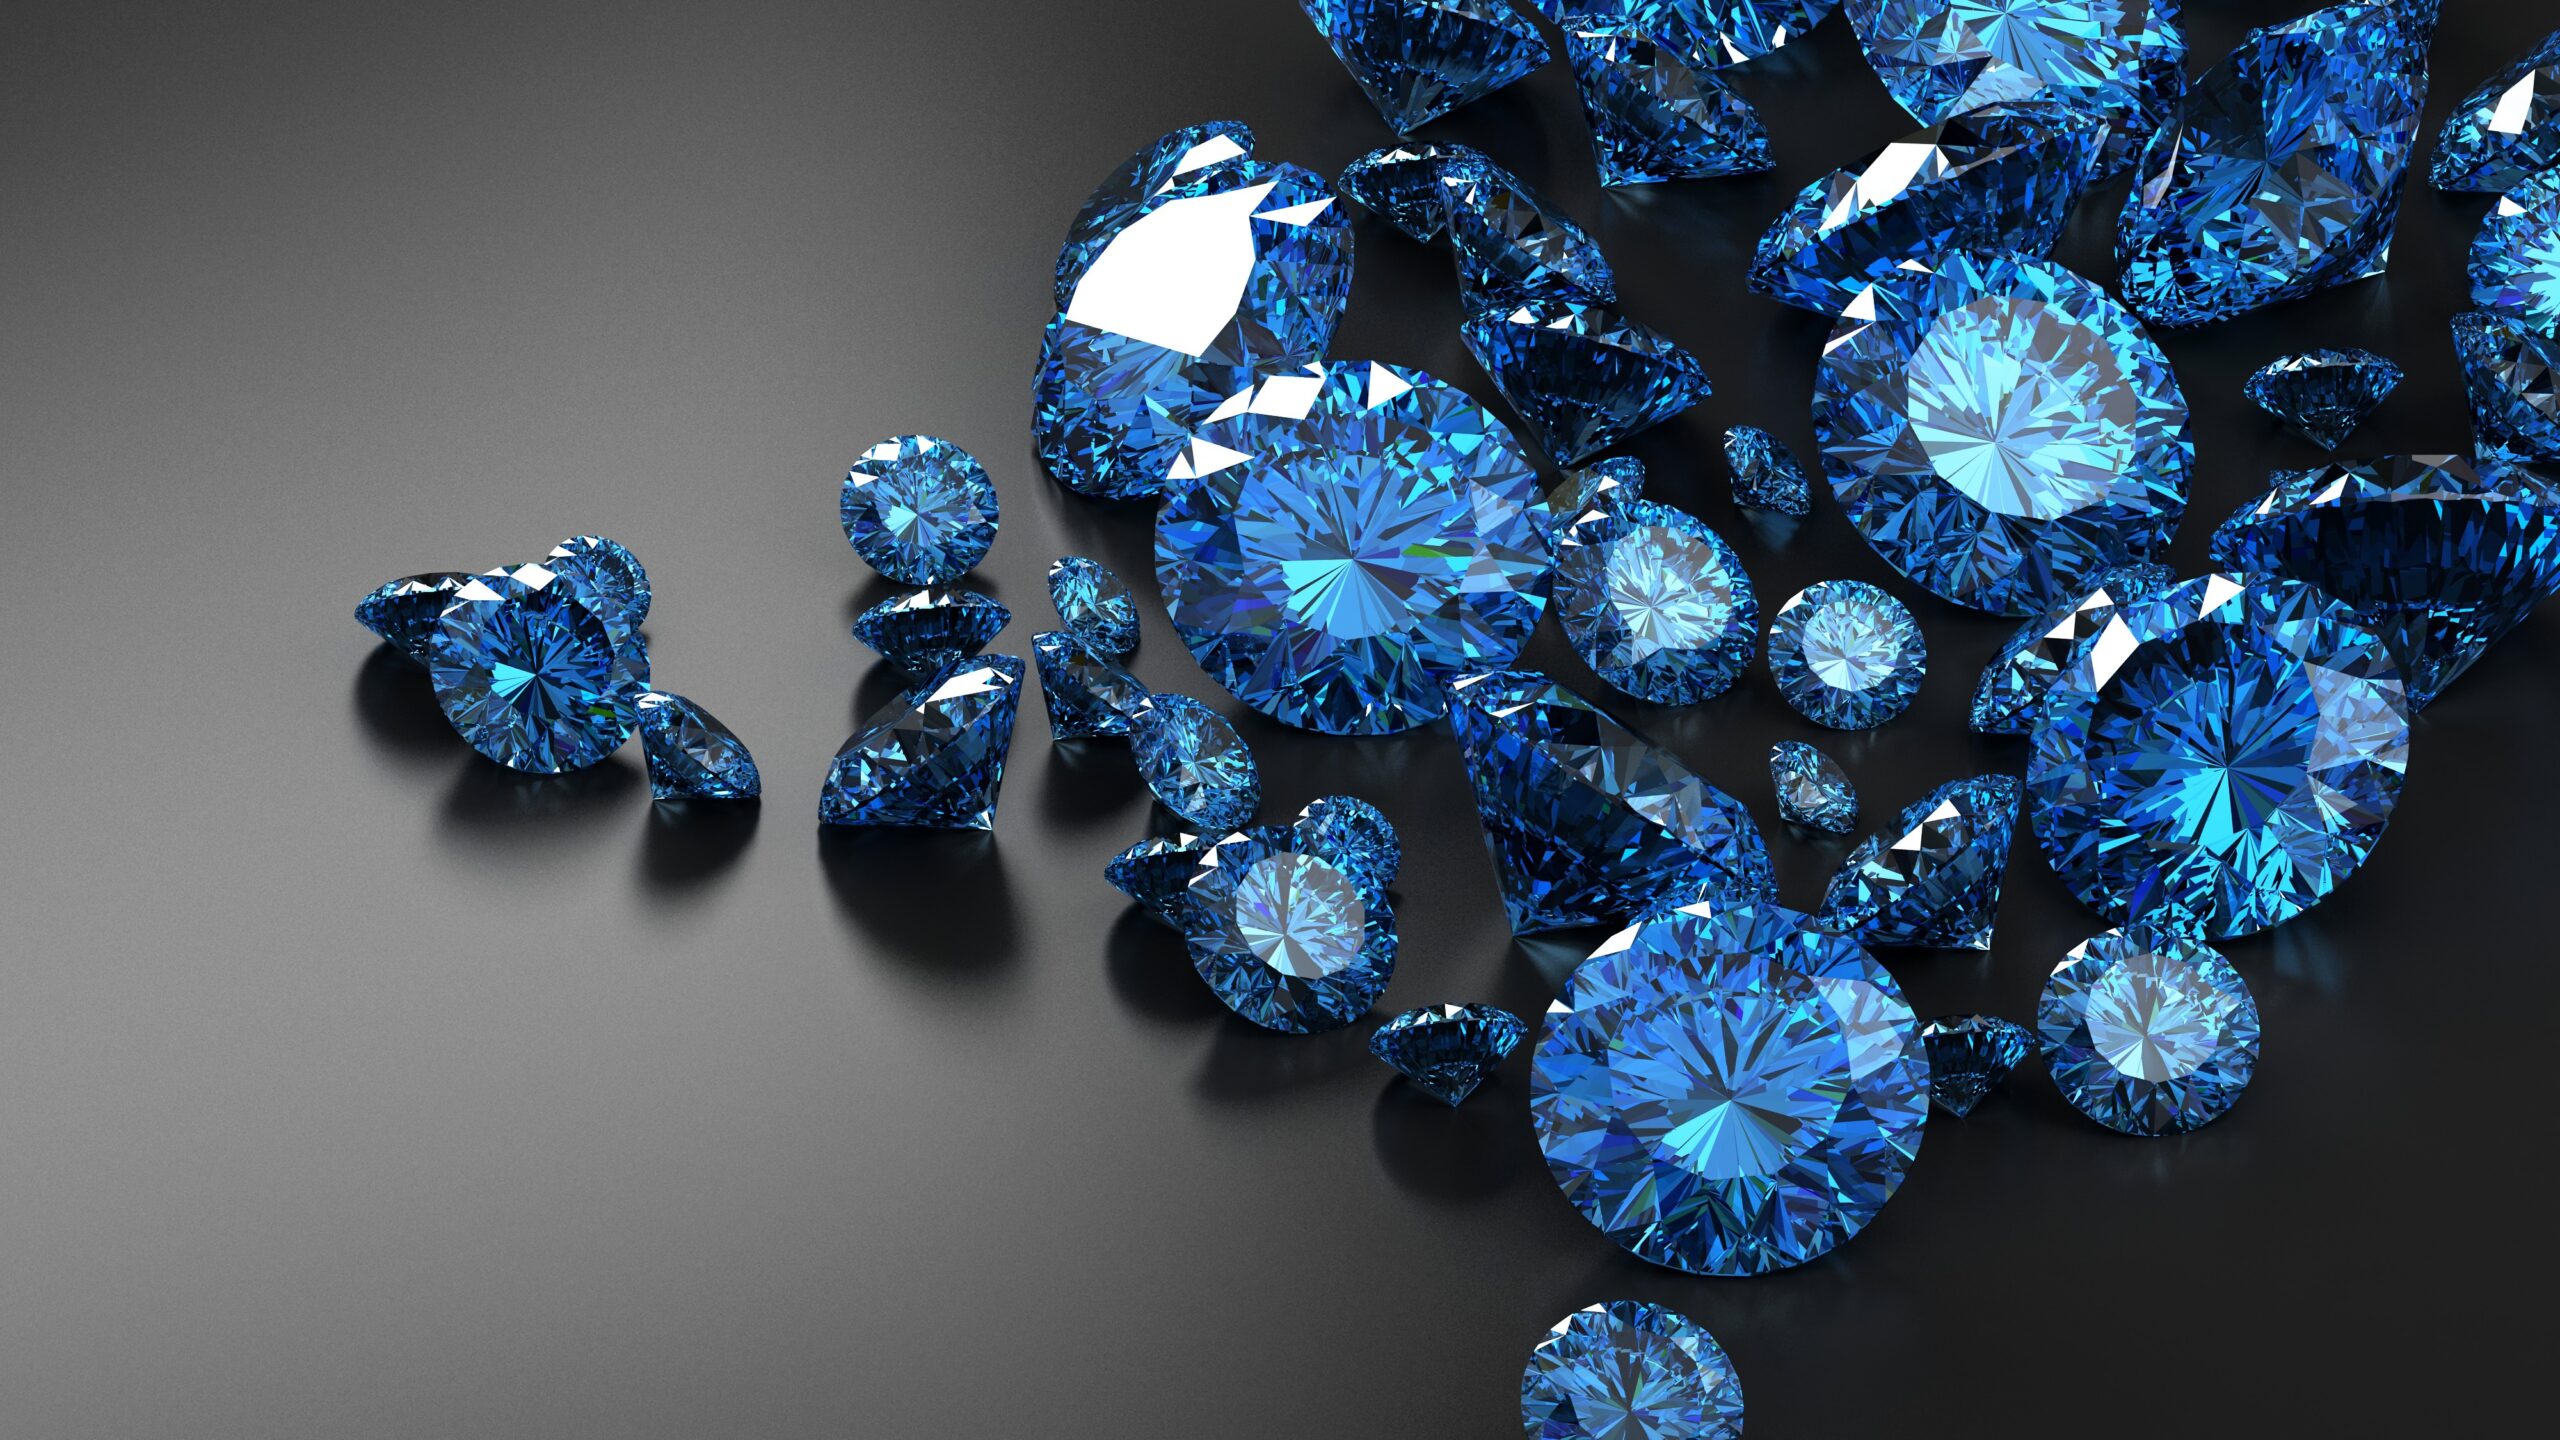 Pile of loose cut blue gemstones.